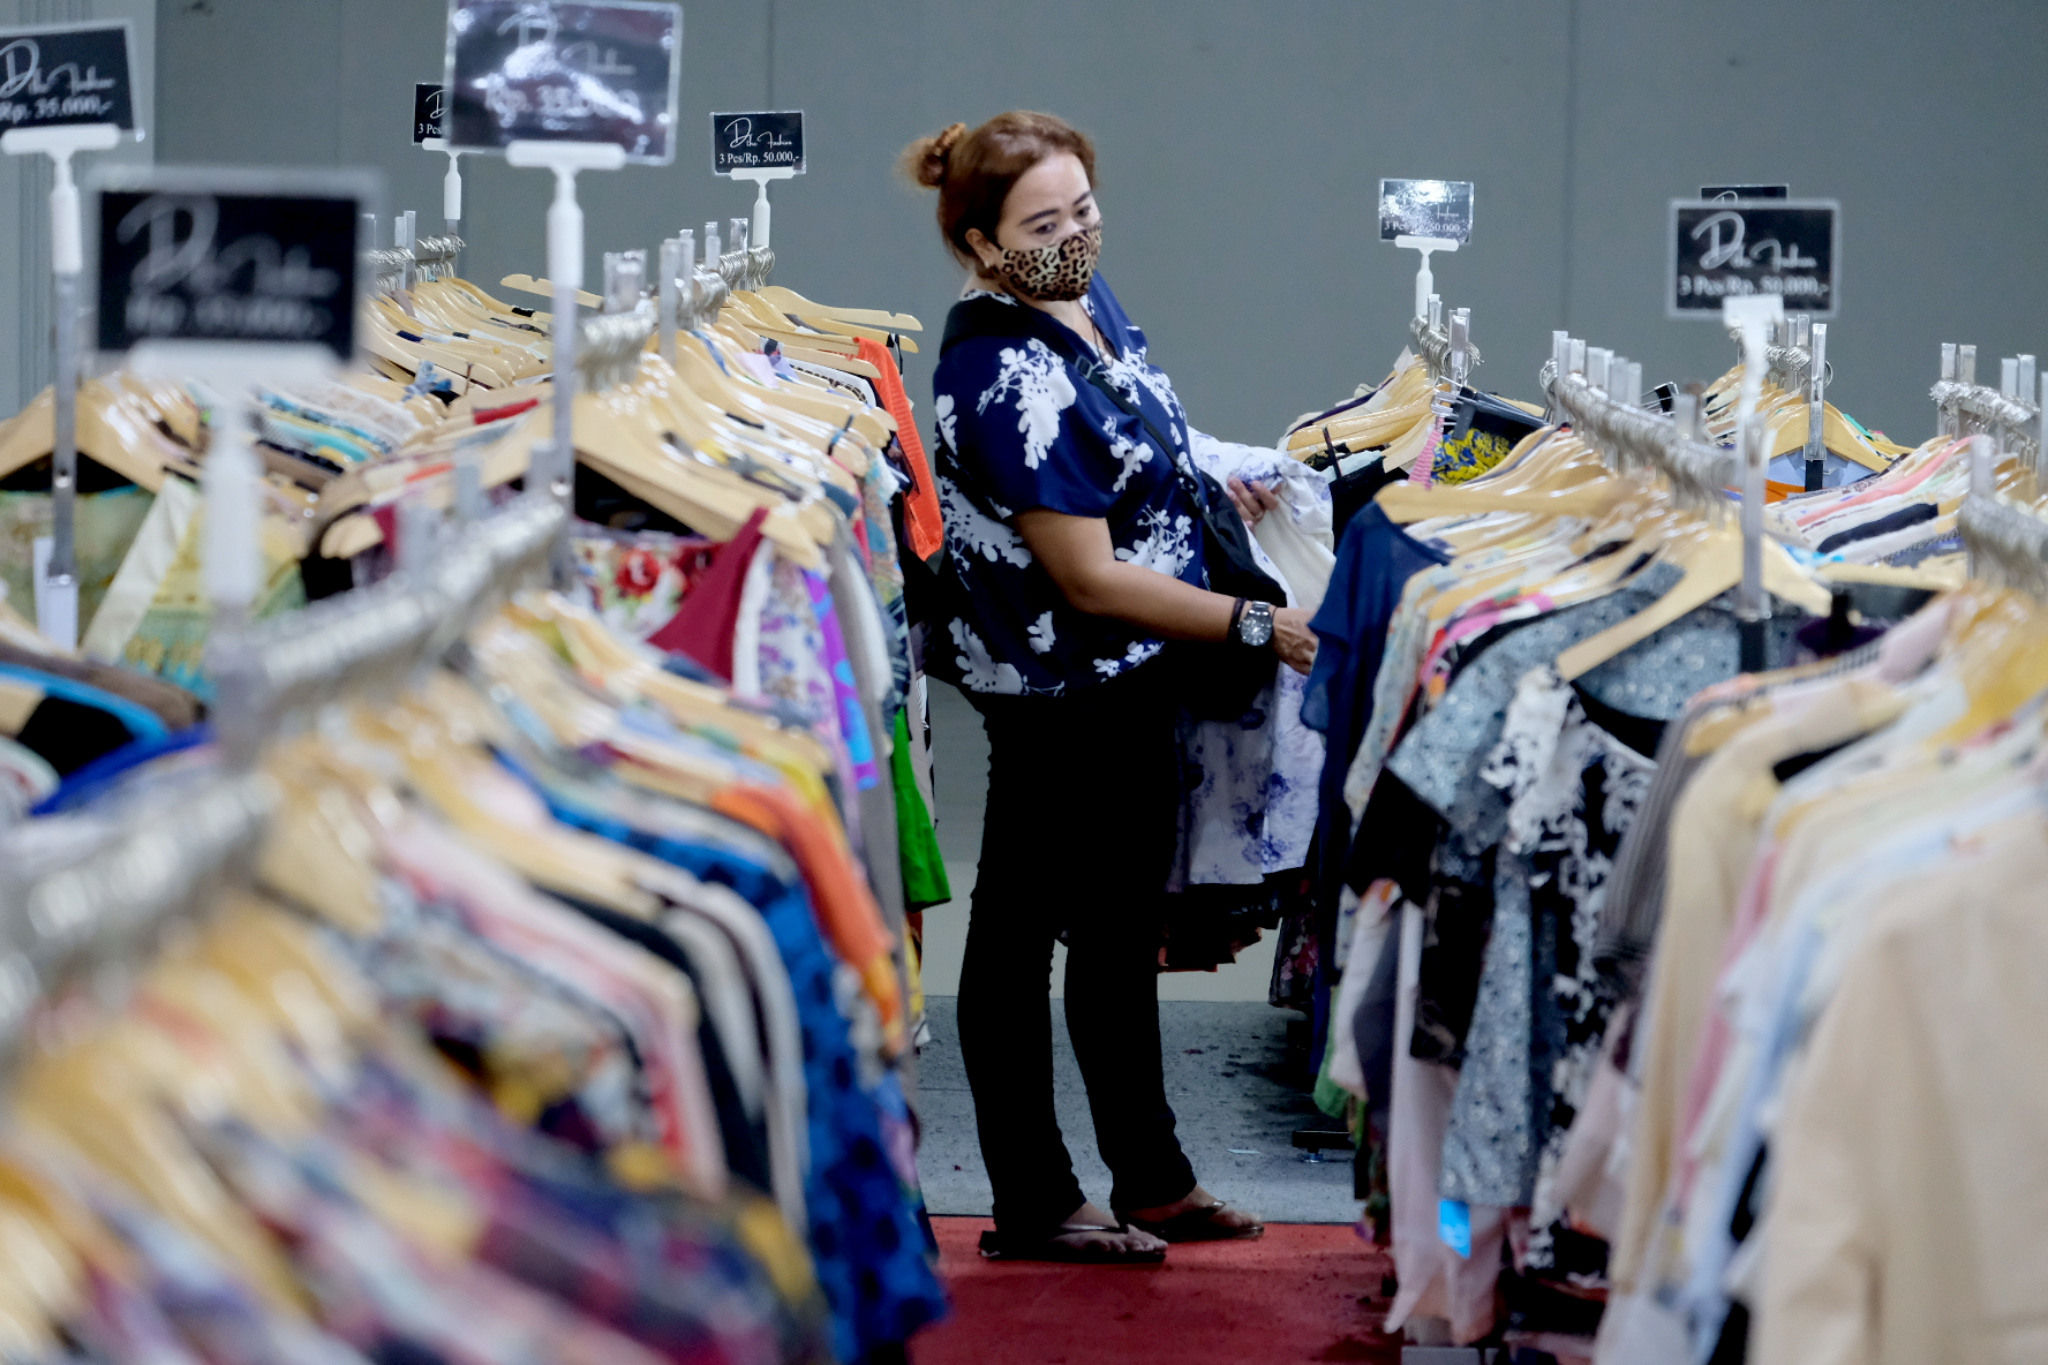 <p>Pengunjung memilih pakaian yang dijual murah di gerai pusat perbelanjaan kawasan Blok M, Kamis, 25 Maret 2021. Foto: Ismail Pohan/TrenAsia</p>
